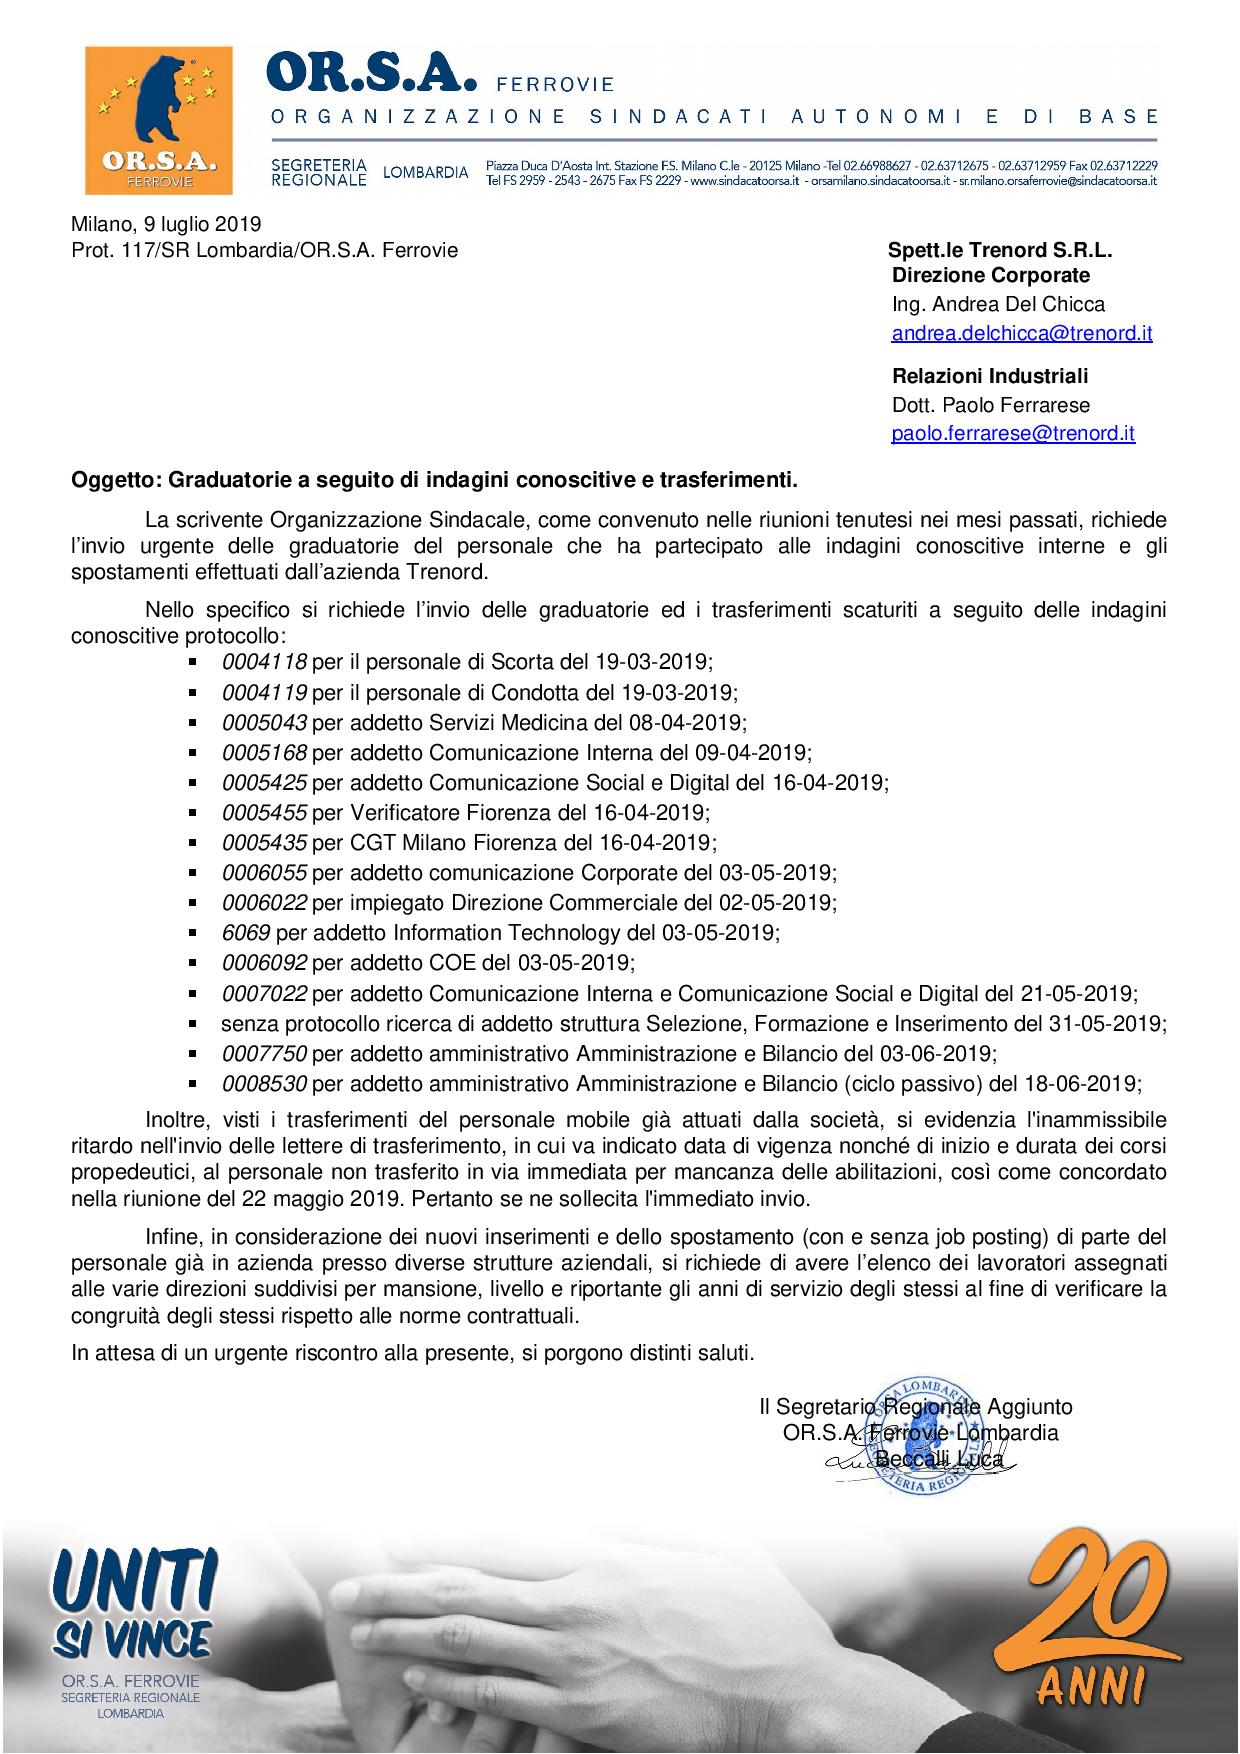 Prot. 117 SR Lombardia OR.S.A. Ferrovie Trenord Graduatorie e Trasferimenti page 001